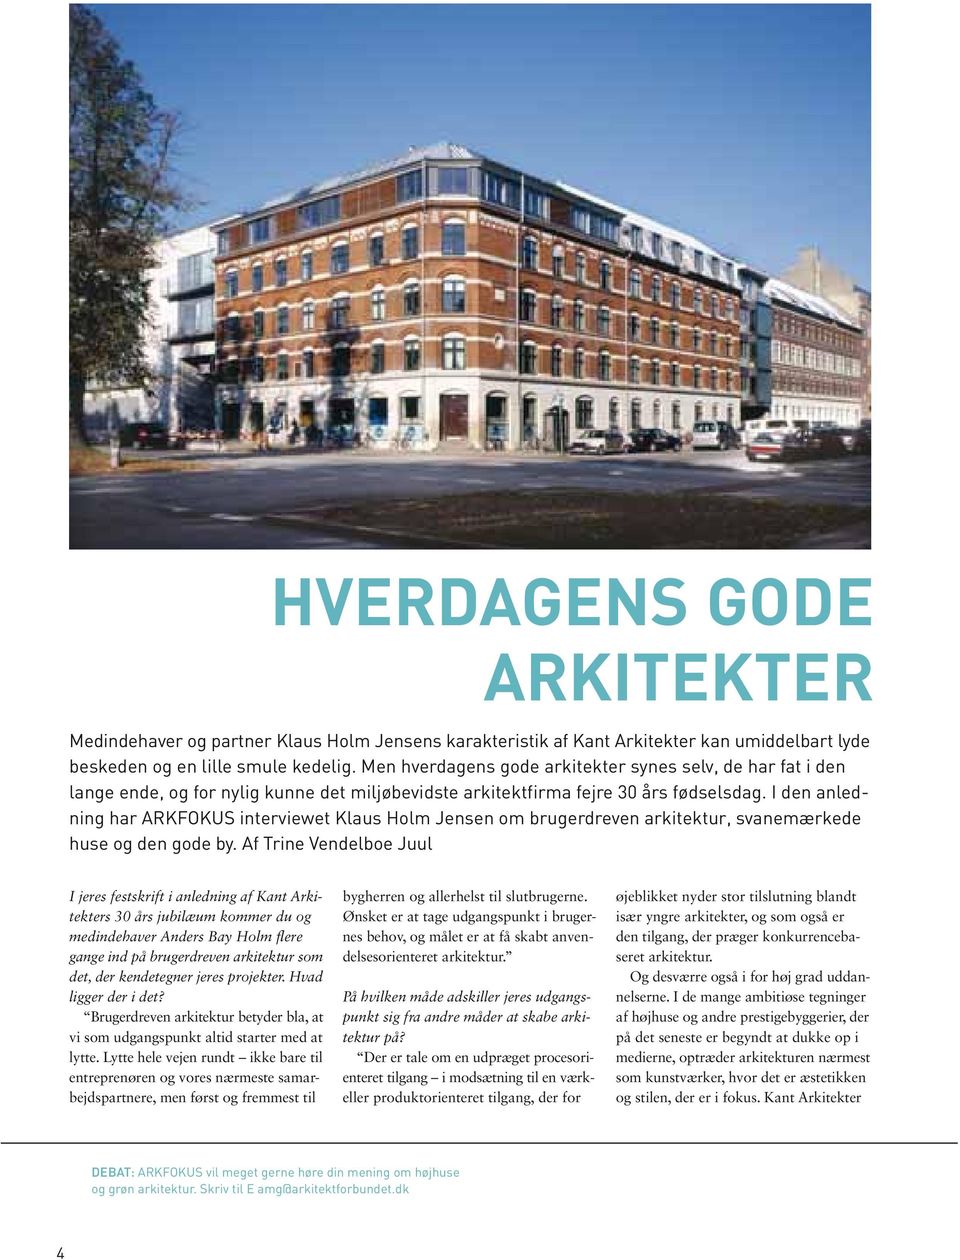 I den anledning har ARKFOKUS interviewet Klaus Holm Jensen om brugerdreven arkitektur, svanemærkede huse og den gode by.